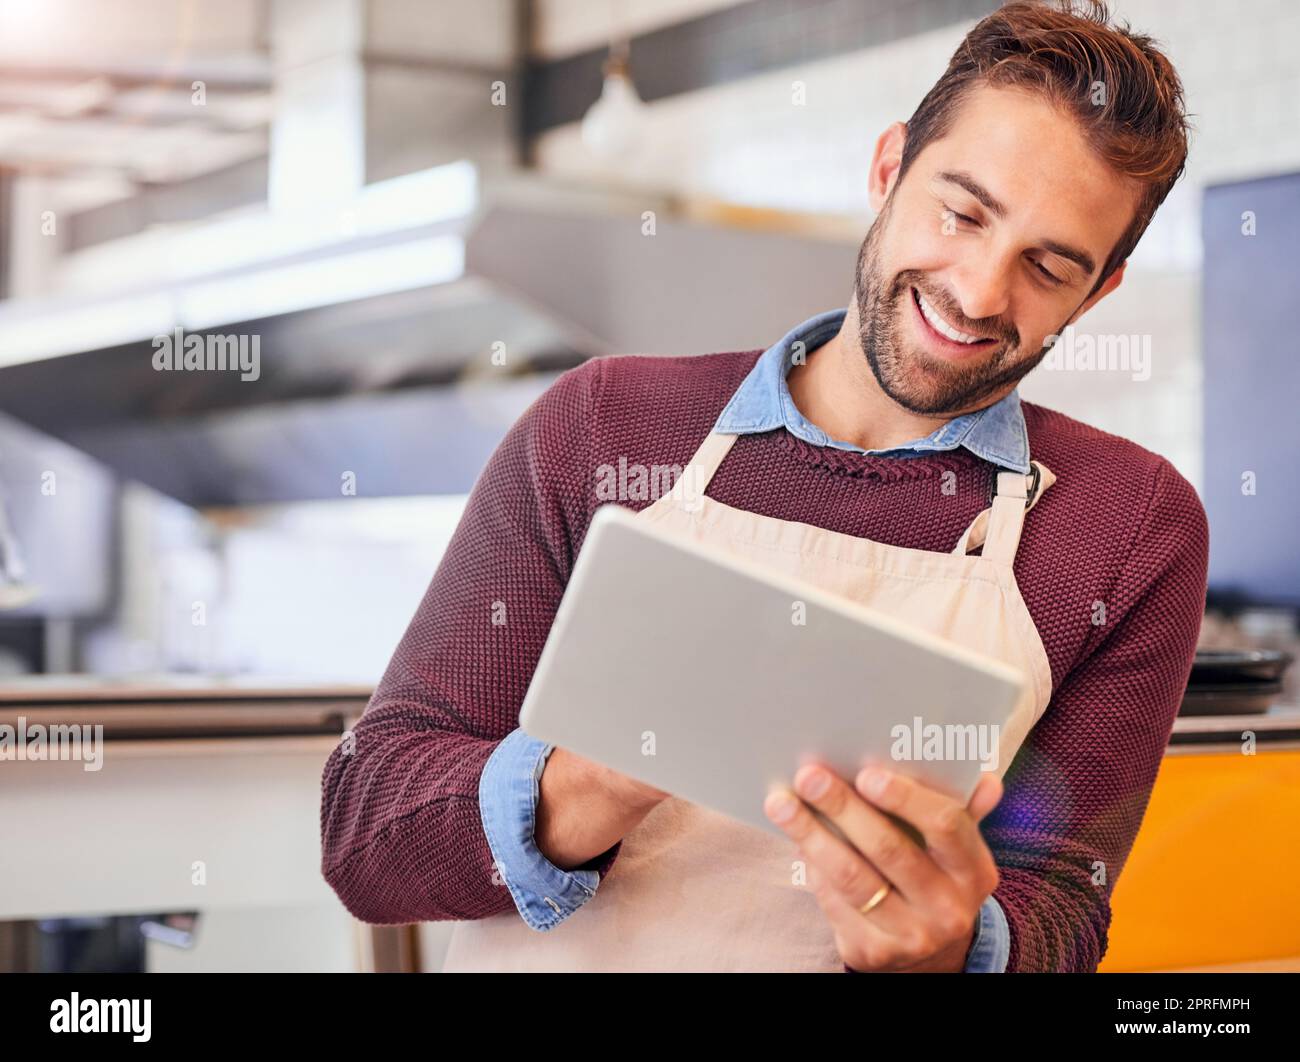 Zeit finden, um auf dem neuesten Stand zu bleiben. Glücklicher junger Unternehmer mit einem Tablet, während er in seinem Café steht. Stockfoto